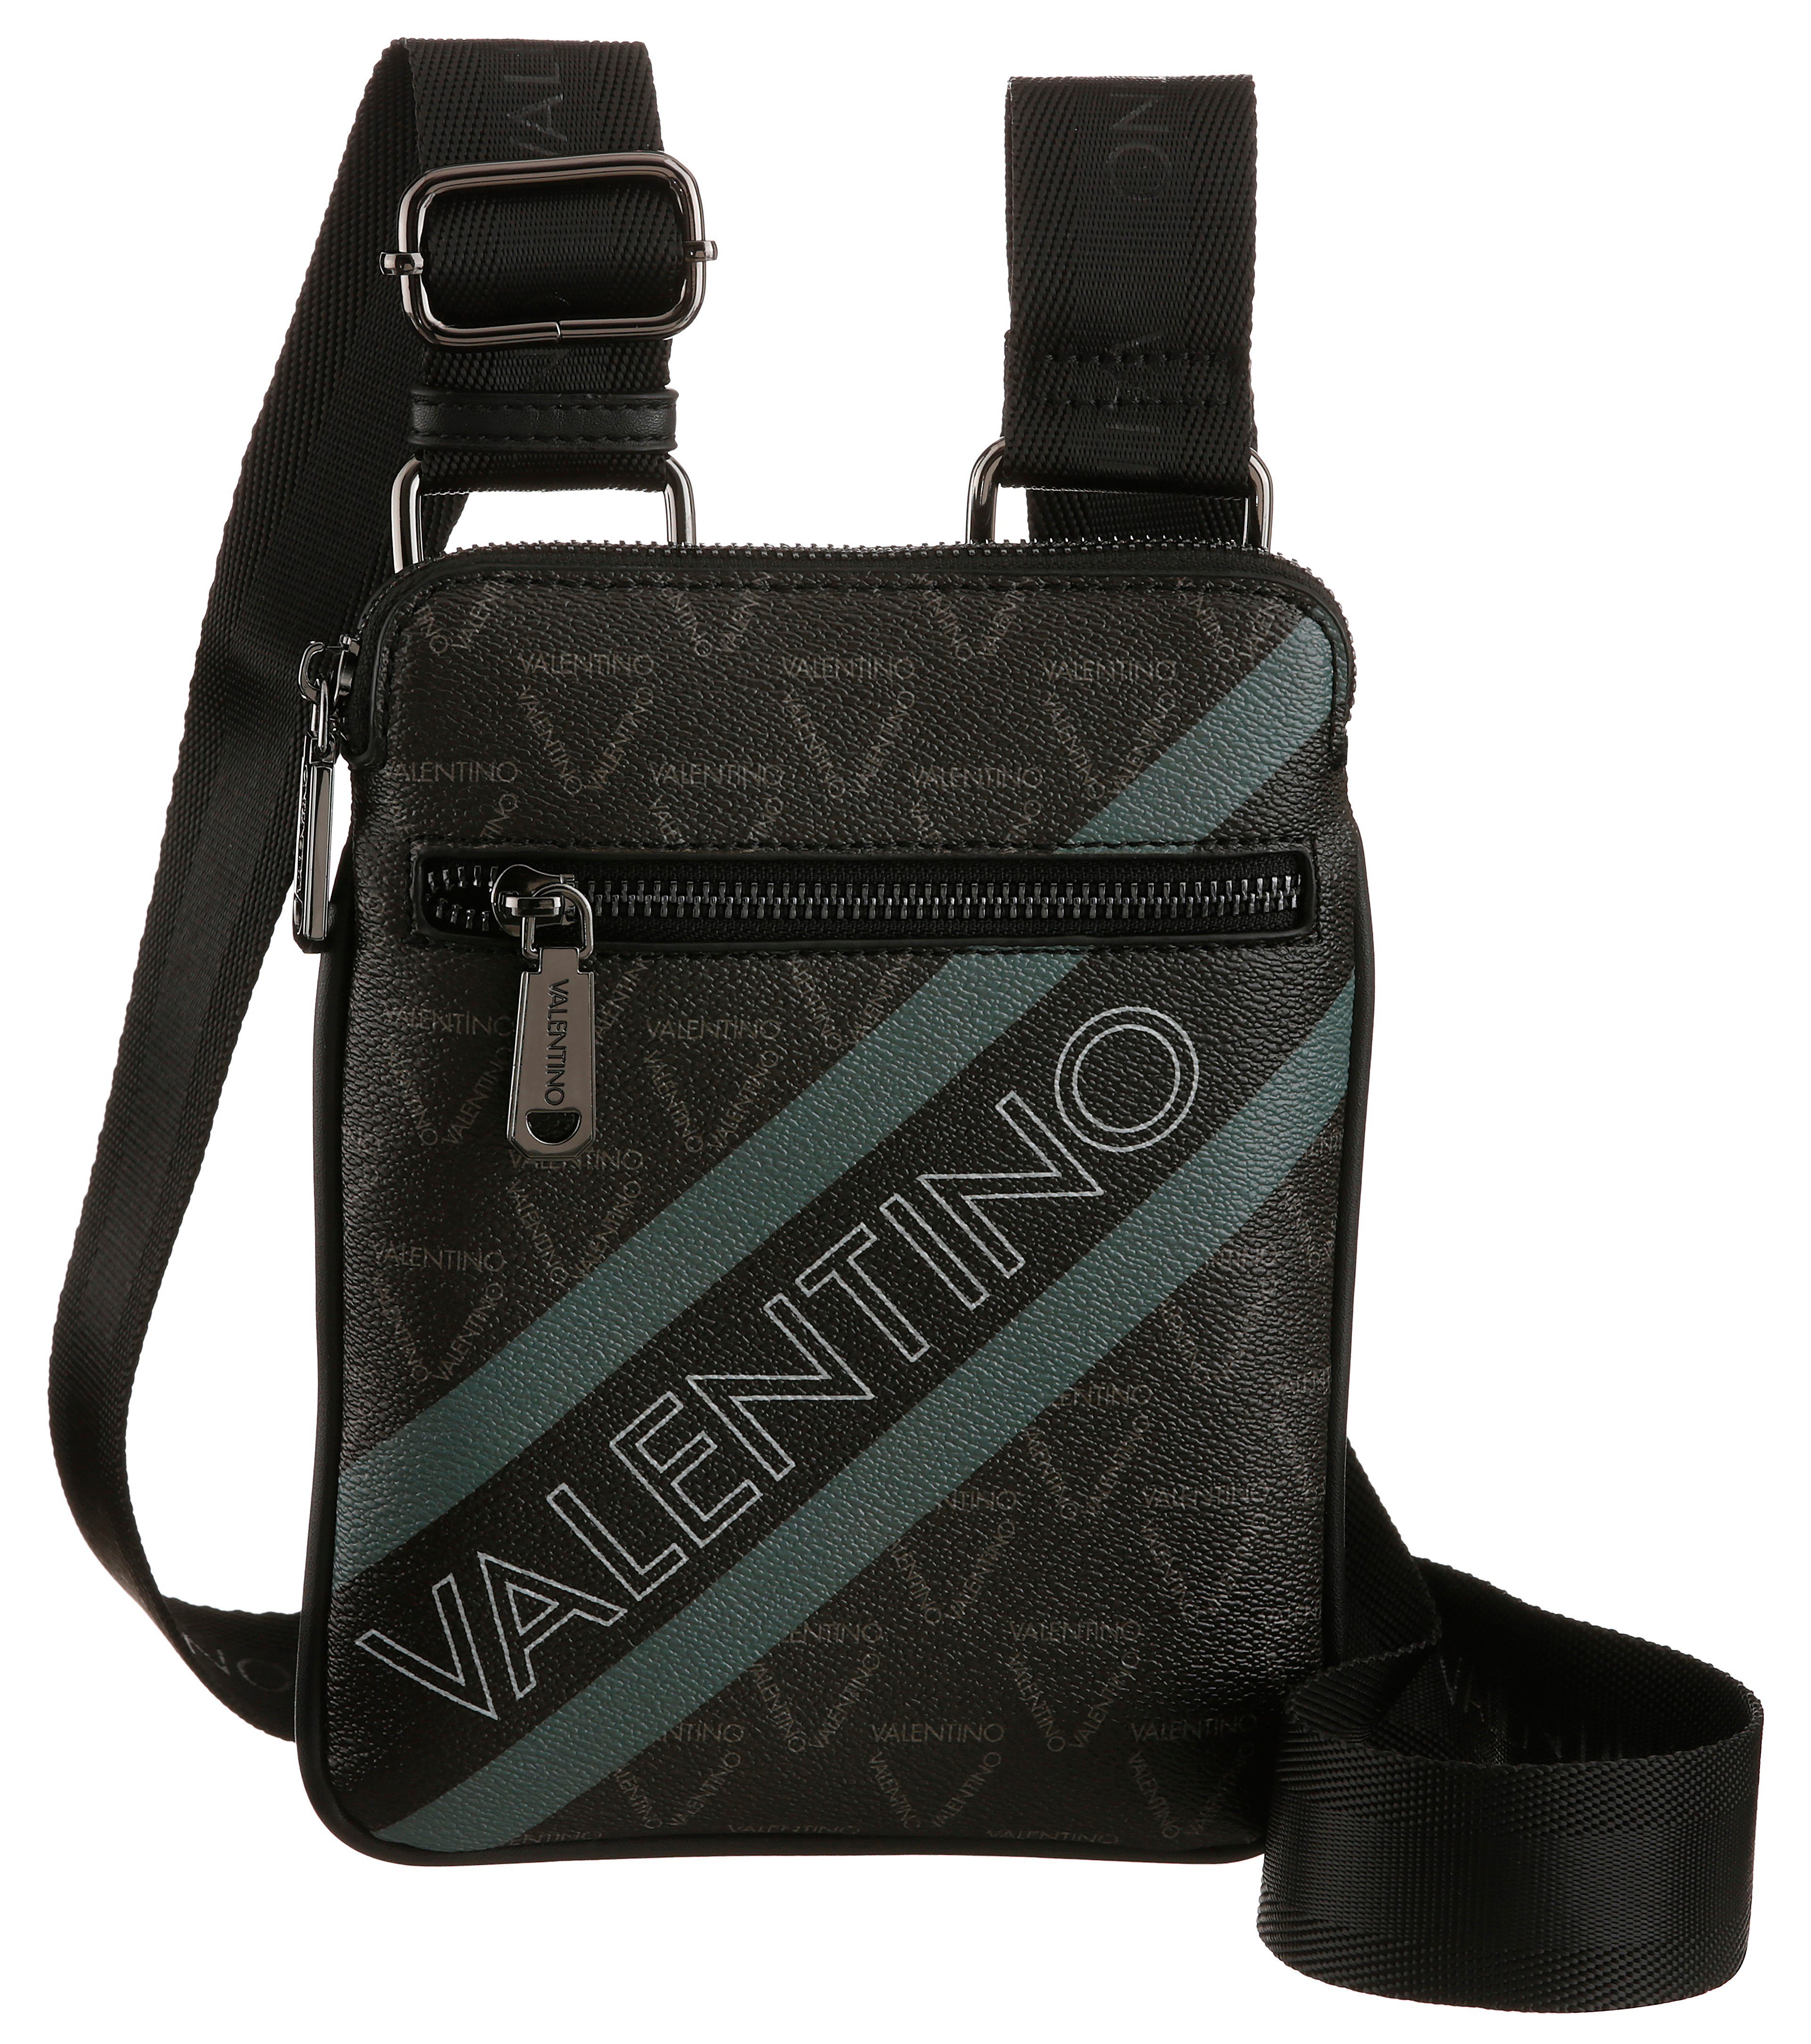 VALENTINO BAGS Umhängetasche ARON, mit Allover-Markenlogo schwarz